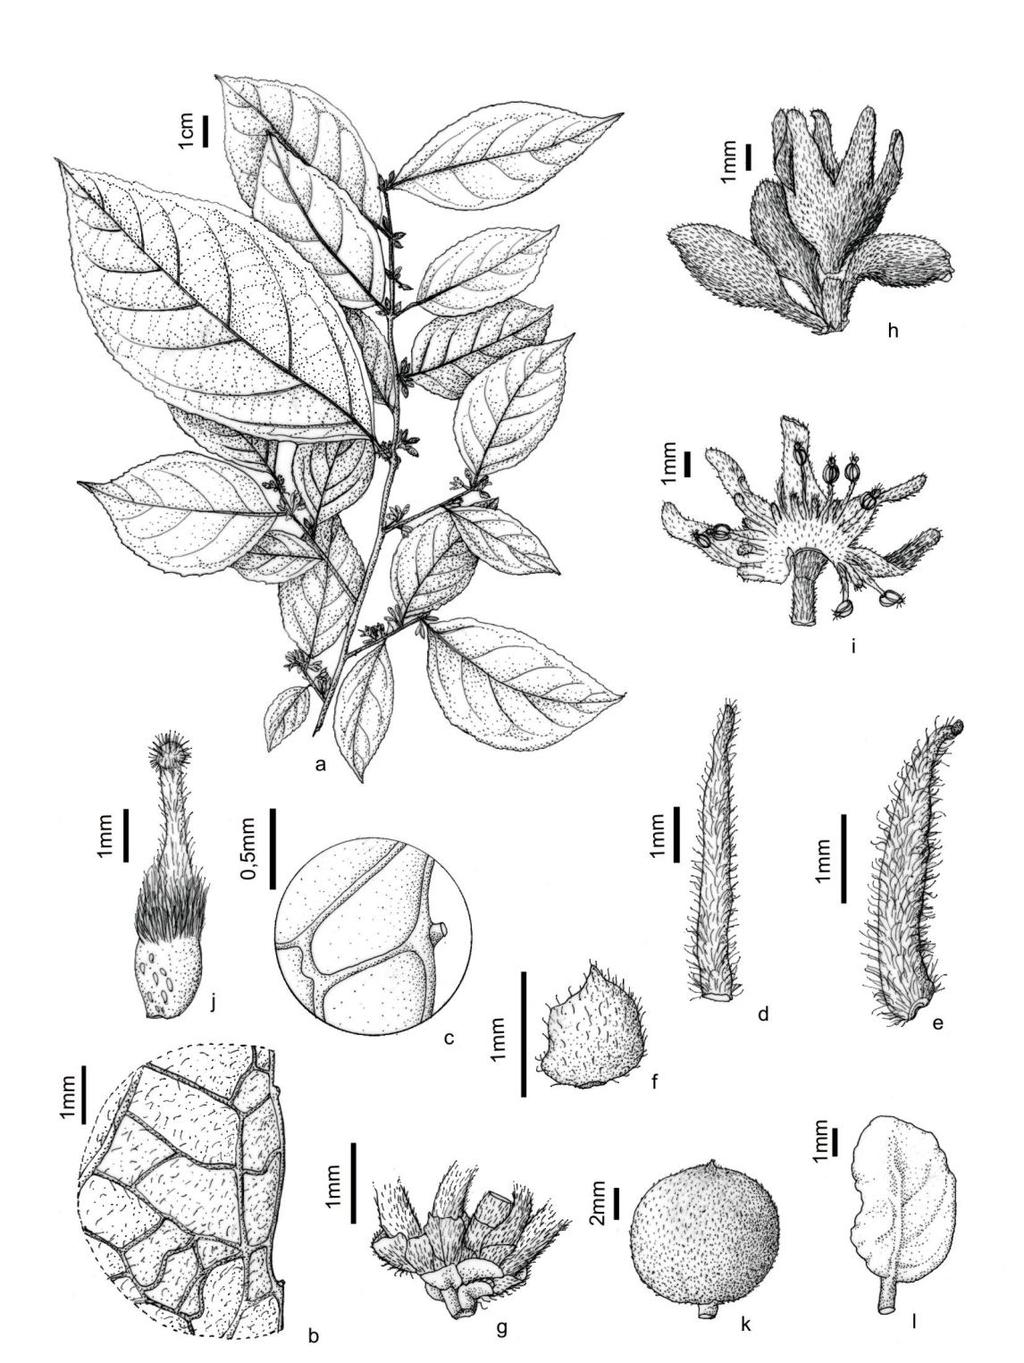 Fig. 26: Casearia murceana: a ramo com inflorescência em botões e flores; b detalhe da lâmina e bordo da folha; c detalhe do dente com glândula; d, e estípulas; f detalhe da bráctea; g detalhes das